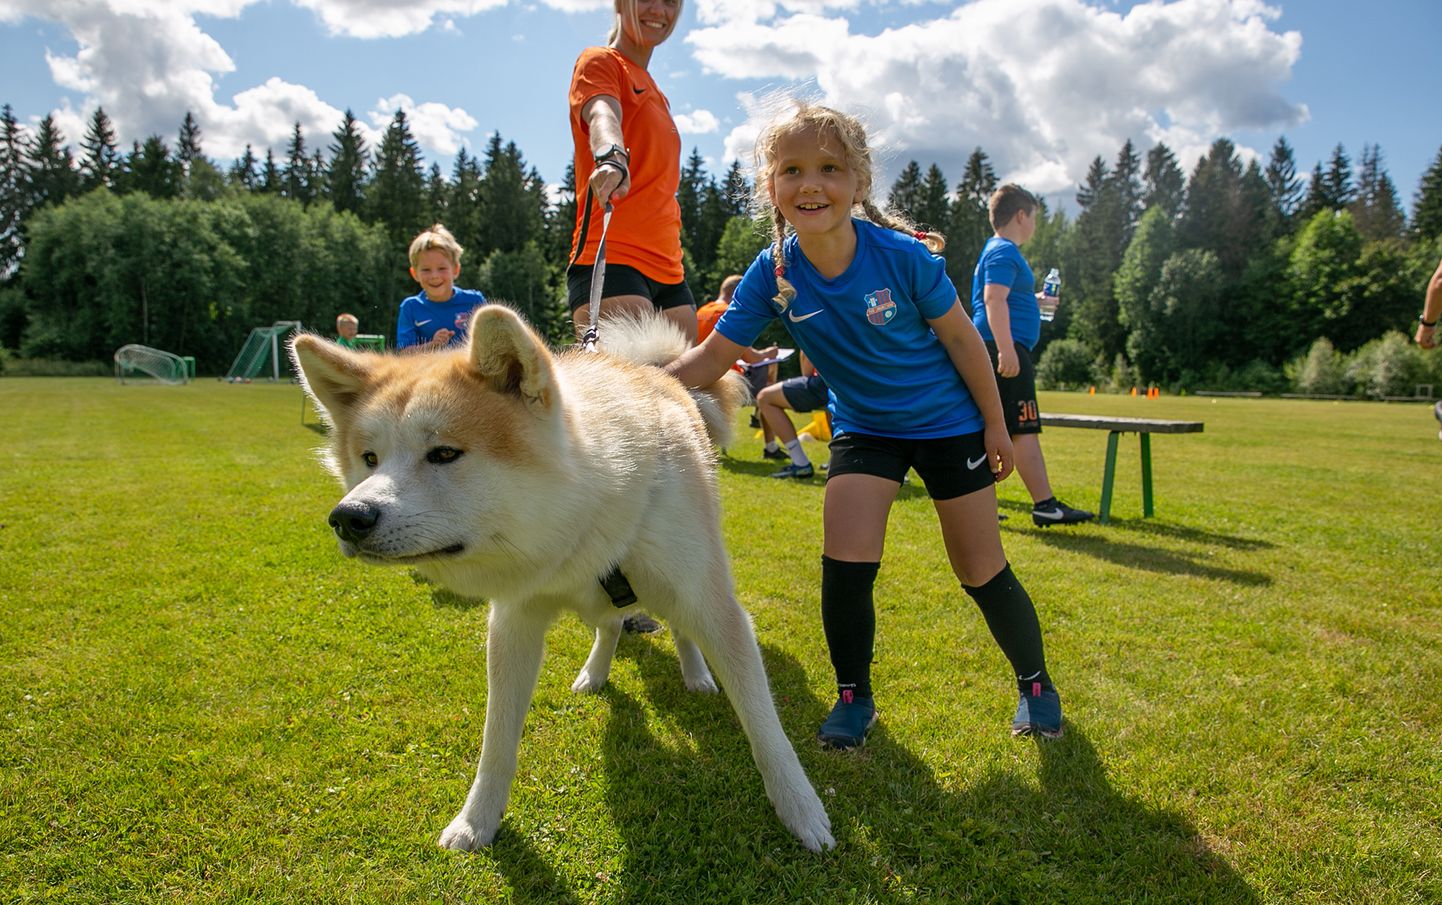 Paide Linnameeskonan jalgpallilaagrid pole tõsised spordilaagrid, vaid lisaks pallimängimisele tehakse seal palju muudki põnevat eesmärgiga panna lapsed liikuma ja värskes õhus aega veetma.